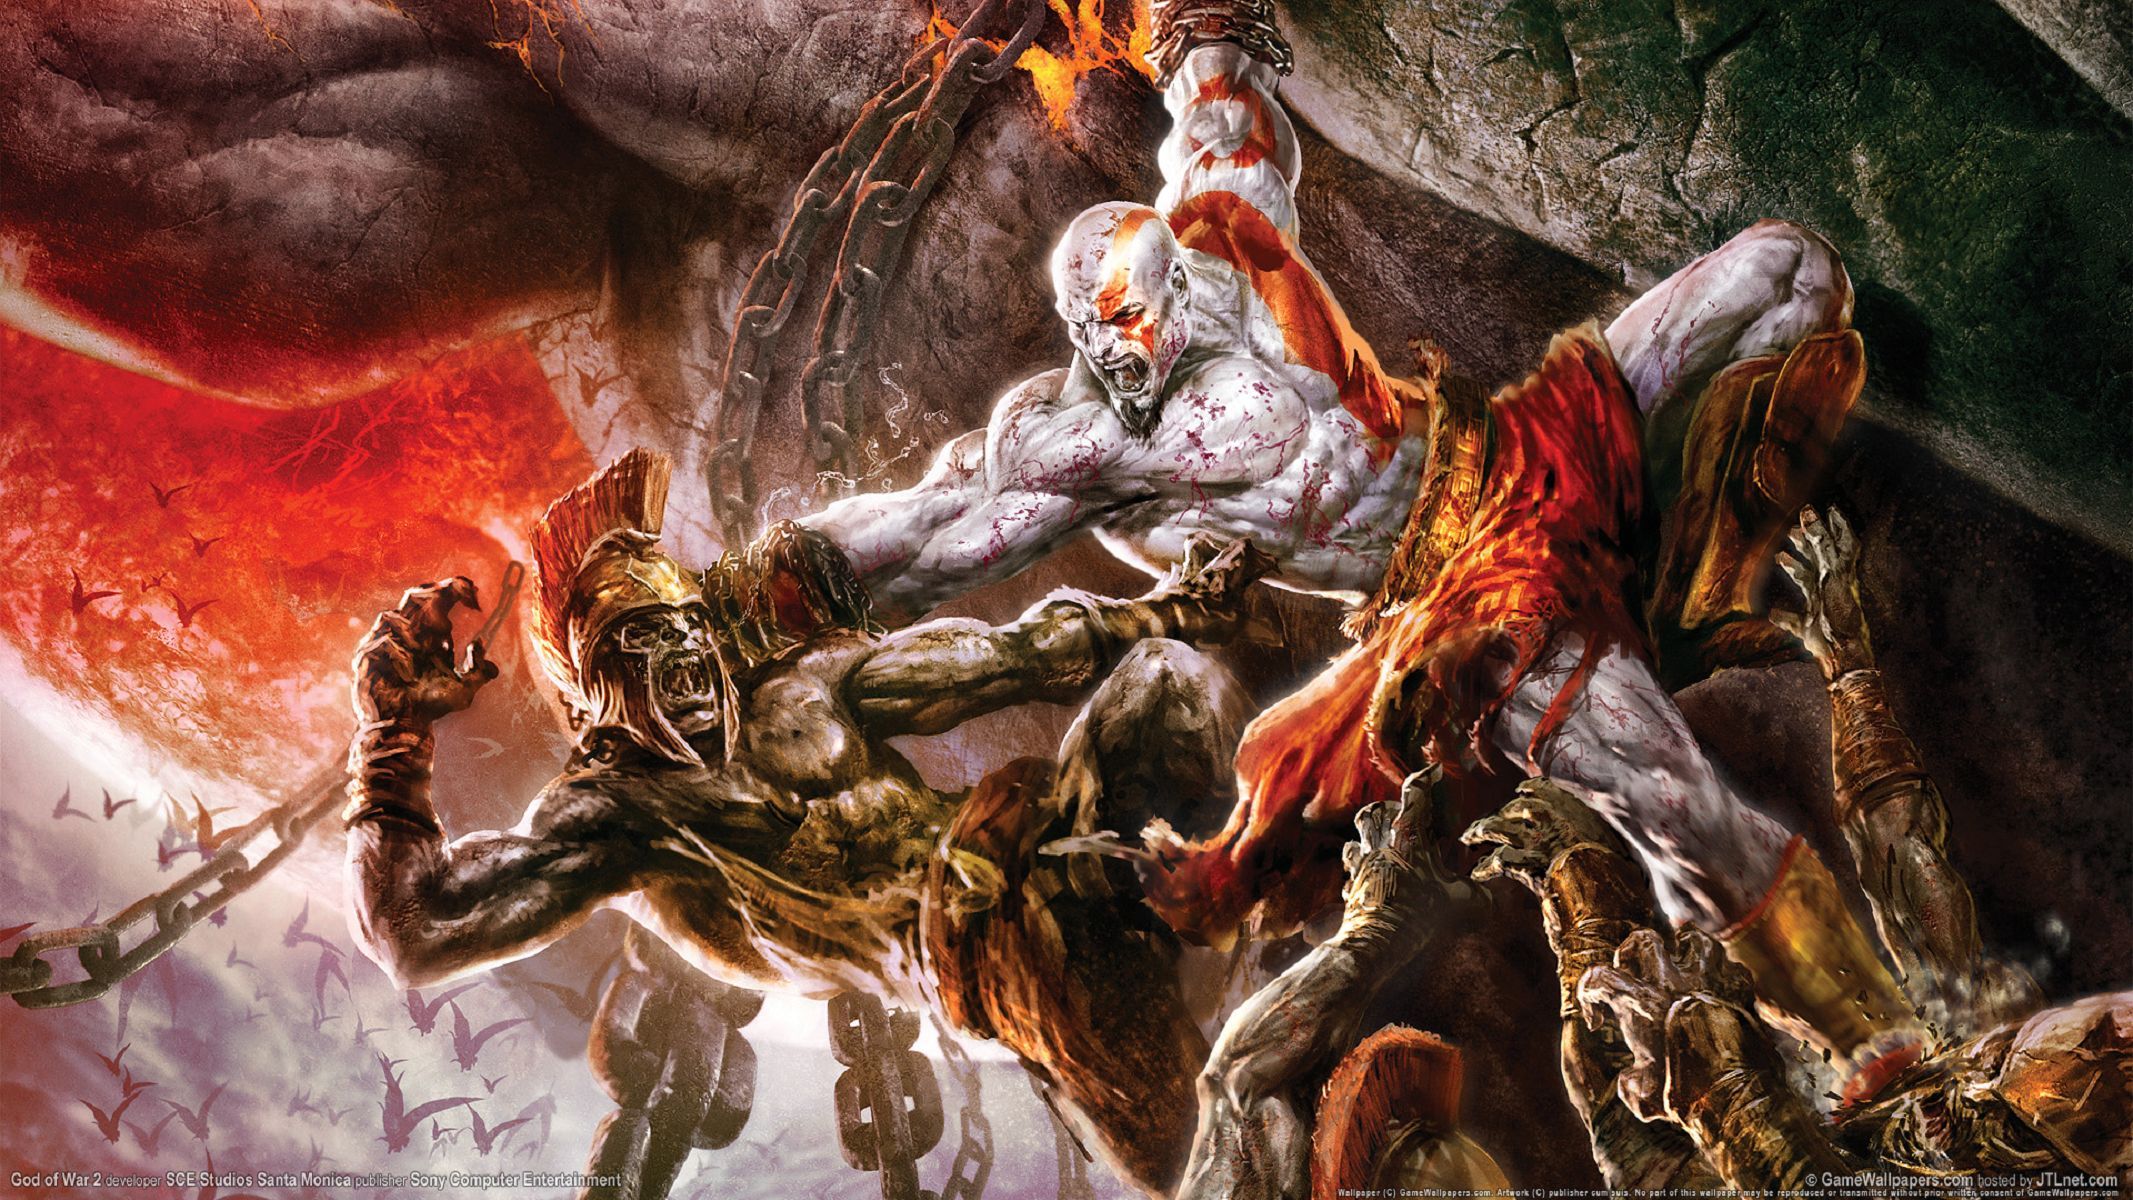 God Of War 2 Game Hdtv, High Res Wallpaper Image For Download